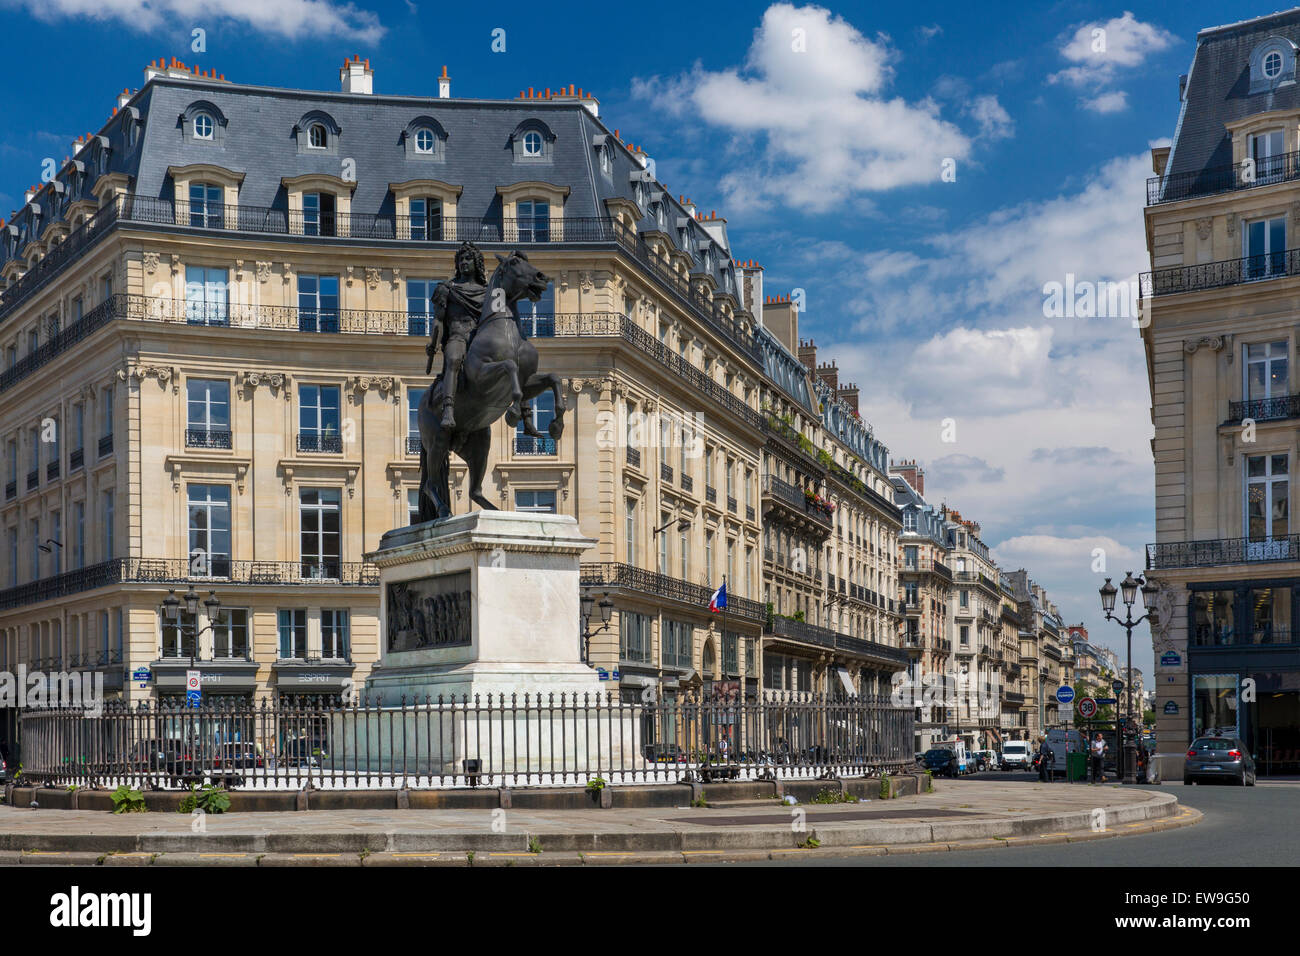 Louis XIV statue and Parisian architecture at Place des Victoires, Paris, France Stock Photo